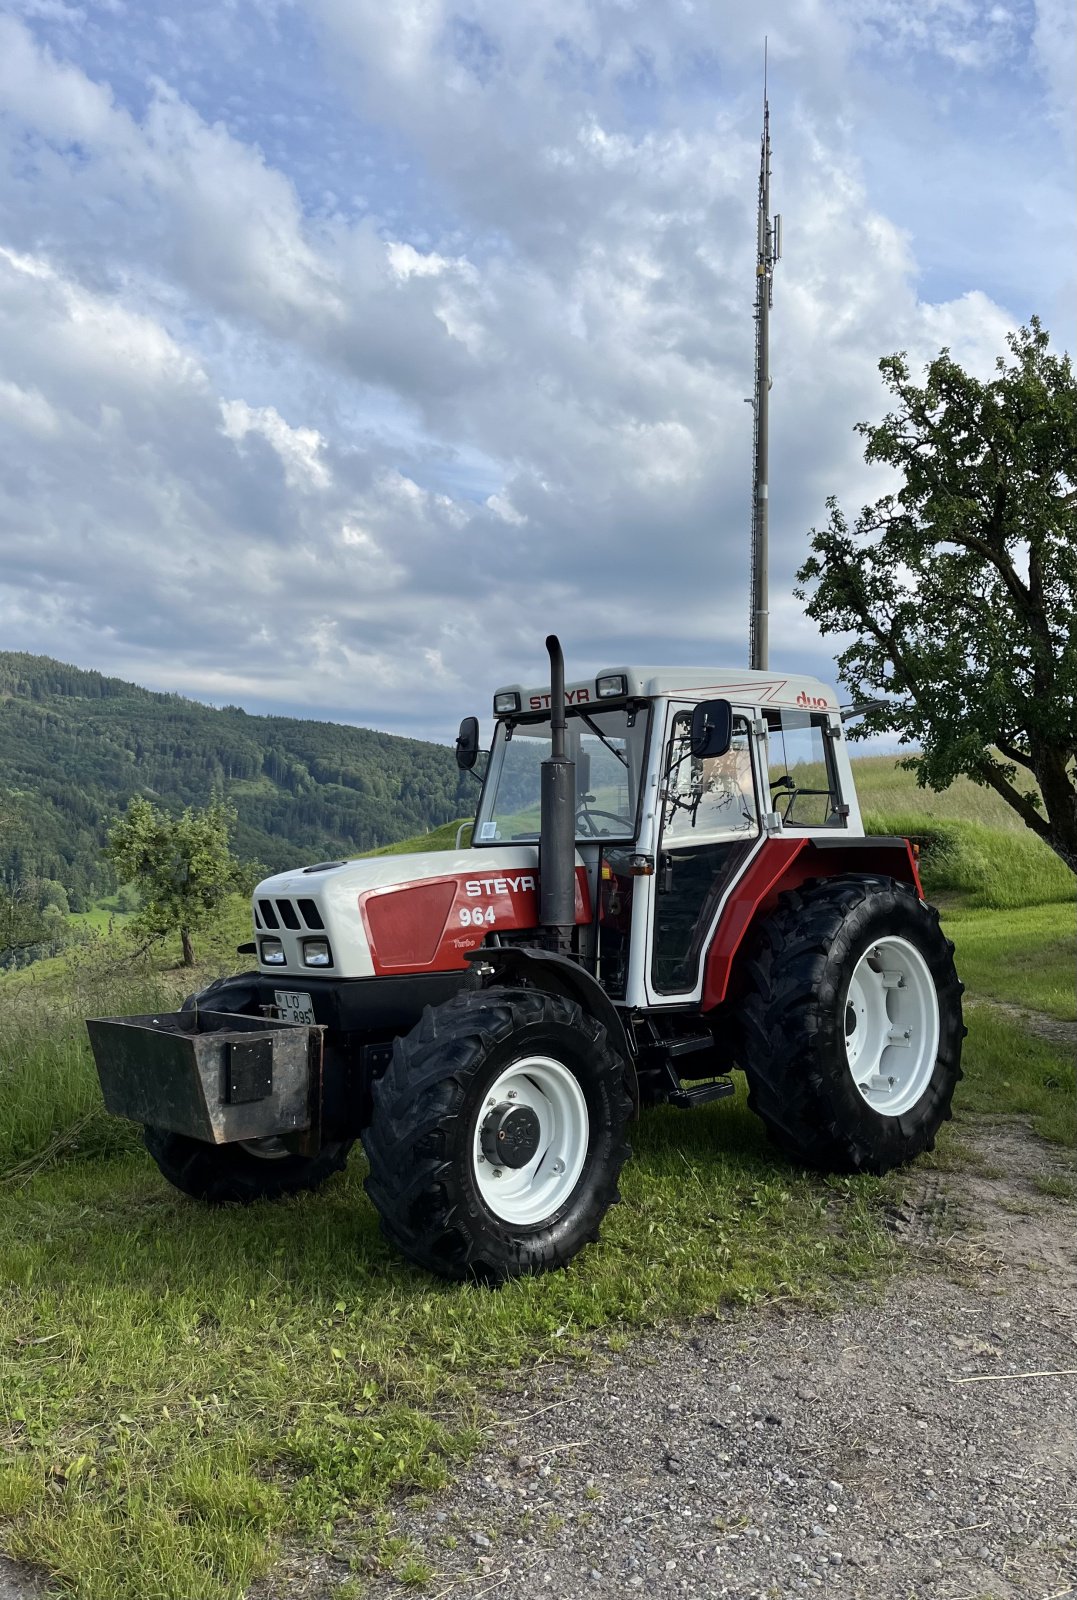 Traktor типа Steyr 964, Gebrauchtmaschine в Kleines Wiesental (Фотография 1)